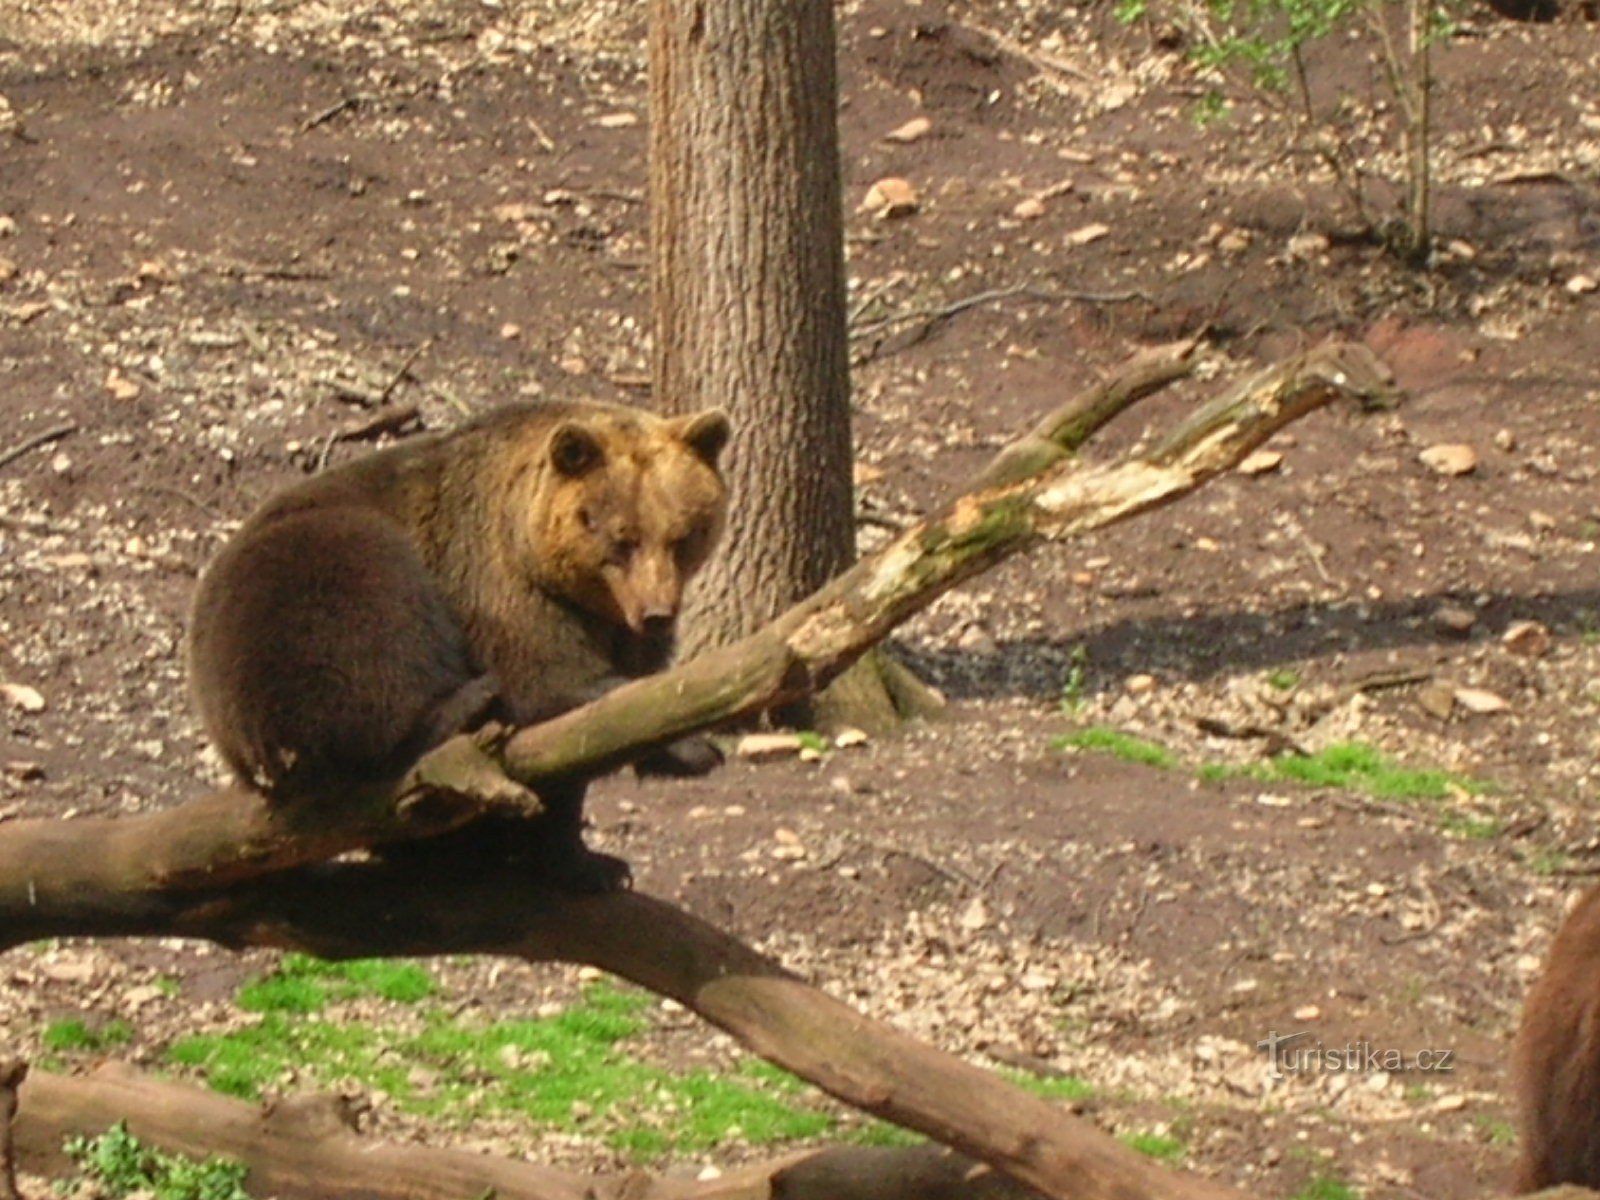 Grădina Zoologică Chomutov